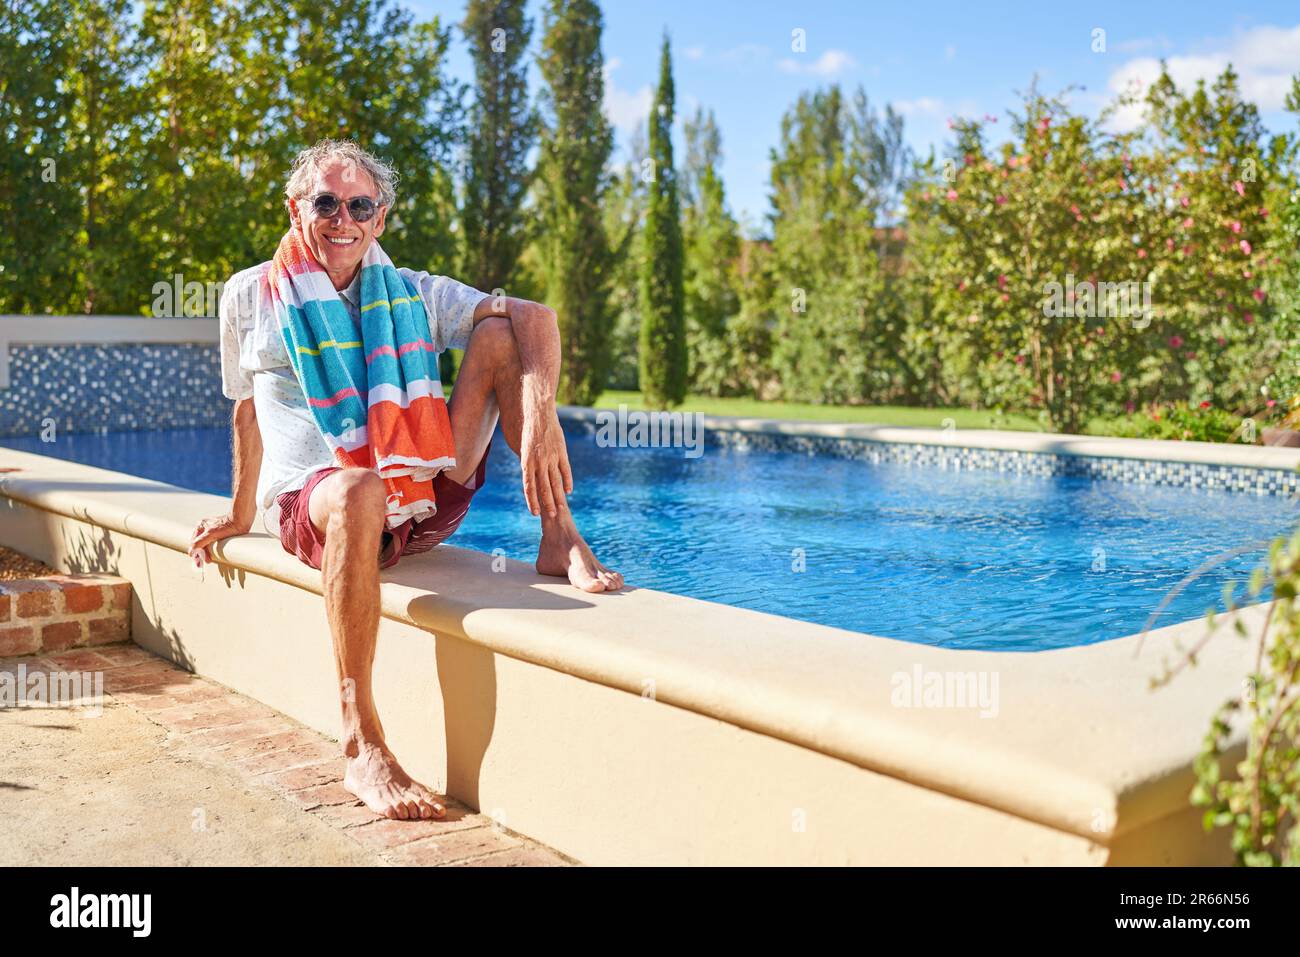 Portrait bon homme senior se relaxant dans une piscine ensoleillée Banque D'Images